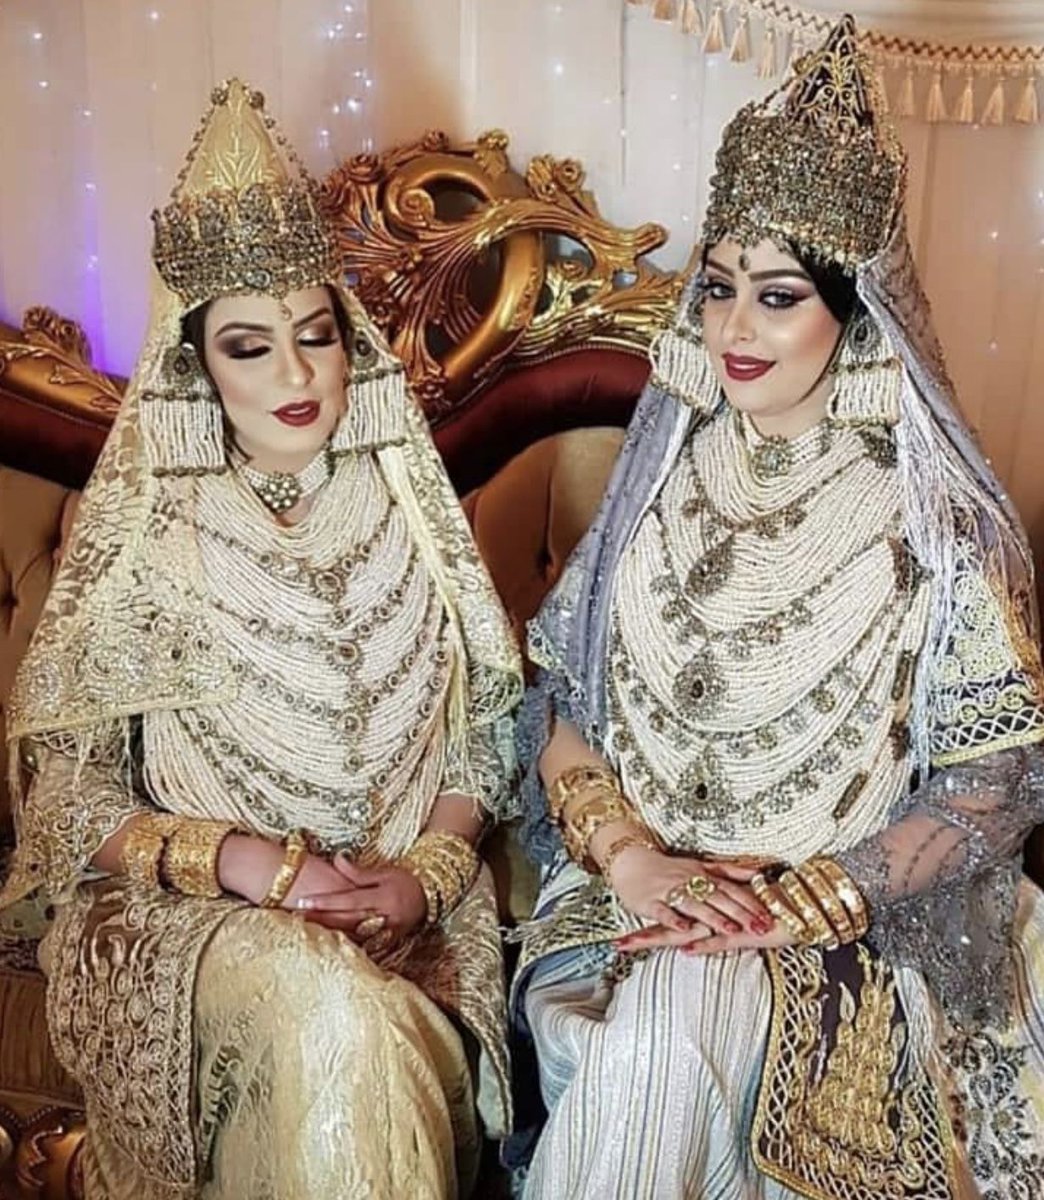 Tlemcen : La chedda est une tenue traditionnelle algérienne, plus précisément de la ville de Tlemcen, mais également portée dans l'ouest du pays notamment à Oran et Mostaganem. Pur produit de l'artisanat tlemcénien, elle était portée par les princesses tlemcéniennes d'antan.